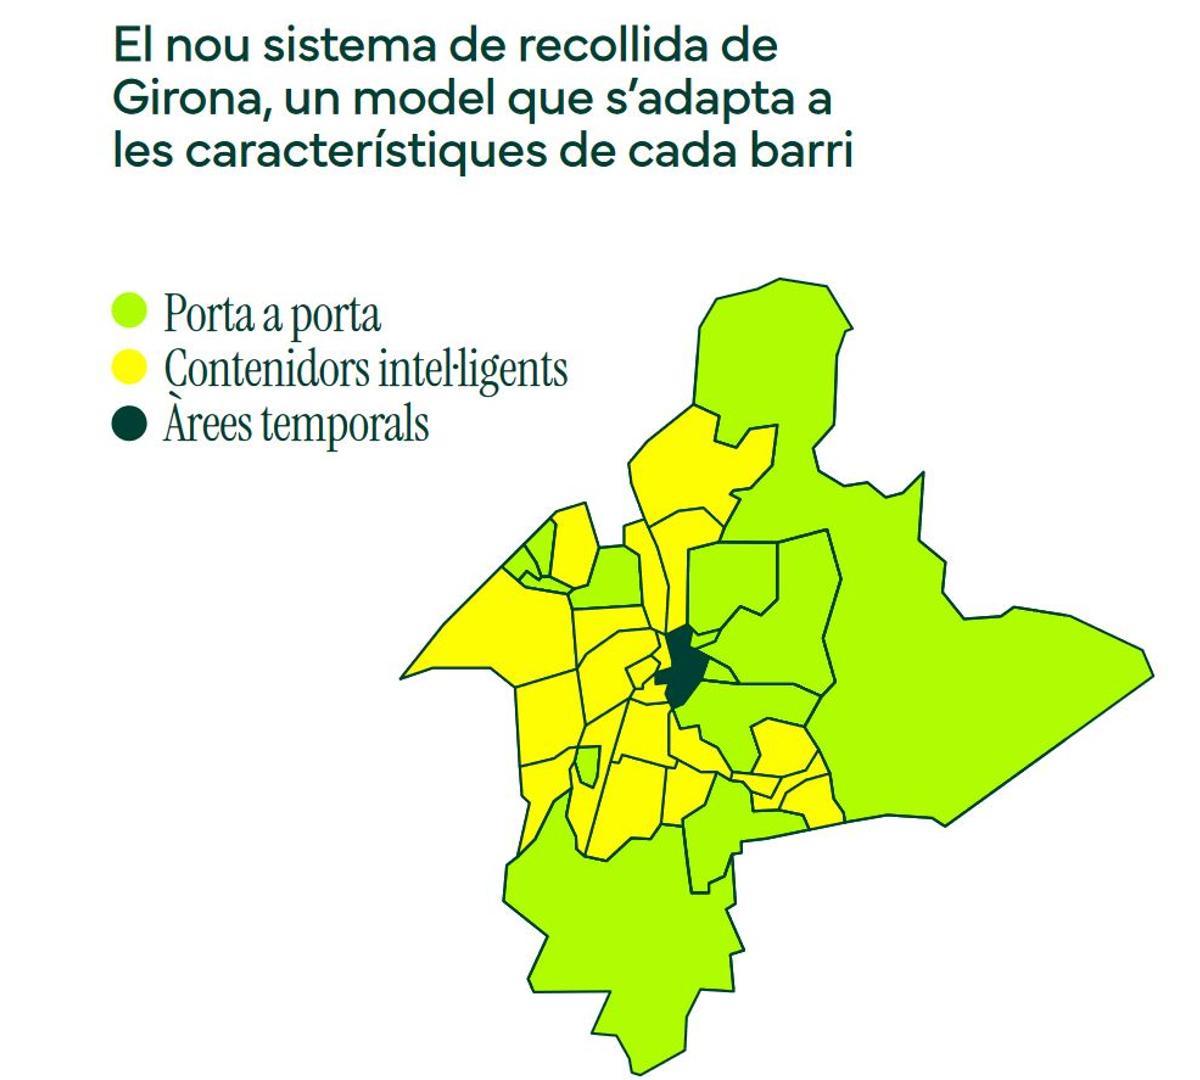 El mapa dels barris i els sistemes que s'aplicaran.